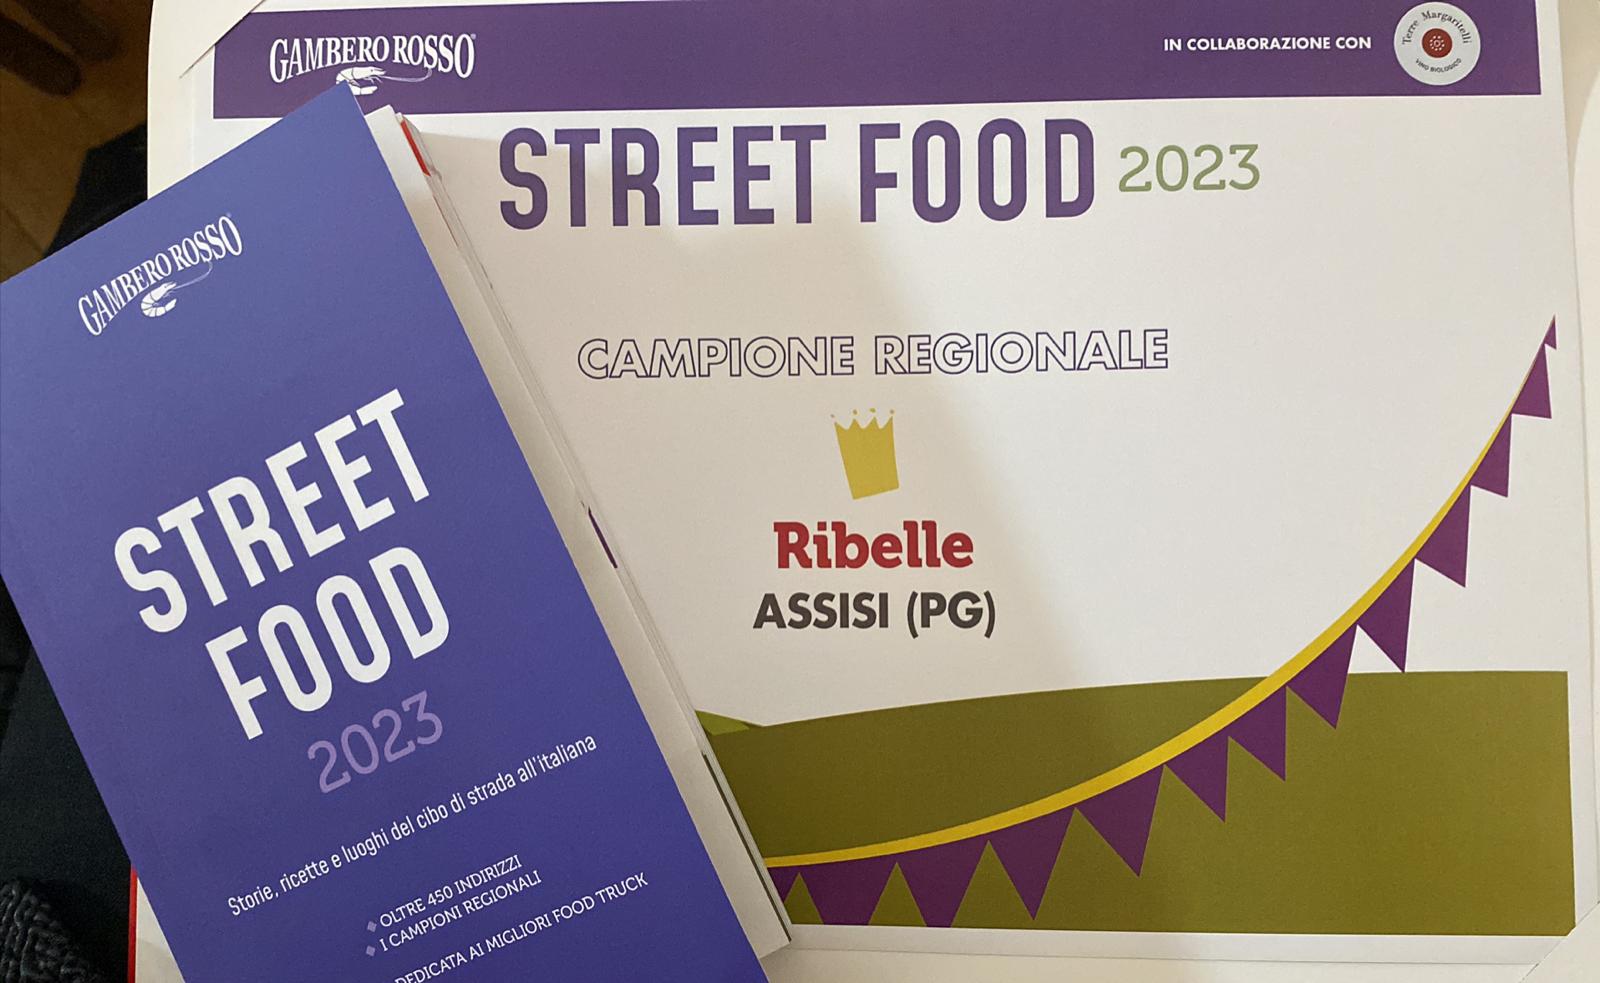 Ribelle miglior Street Food umbro 2023 per Gambero Rosso